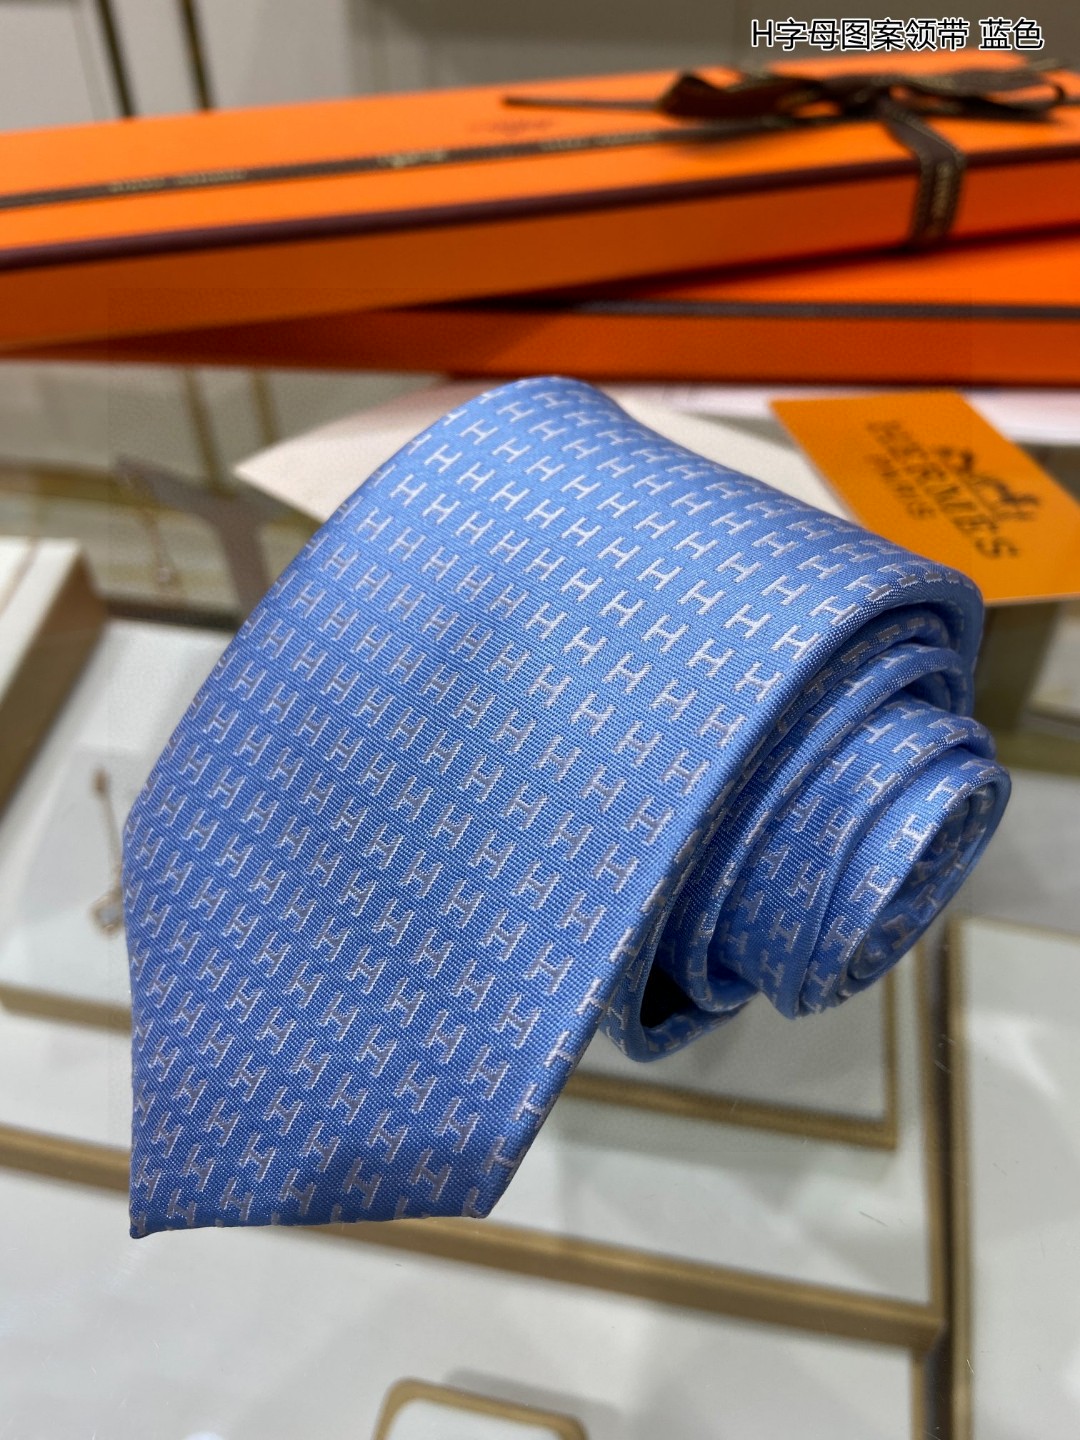 特价男士新款领带系列H字母图案领带稀有H家每年都有一千条不同印花的领带面世从最初的多以几何图案表现骑术活